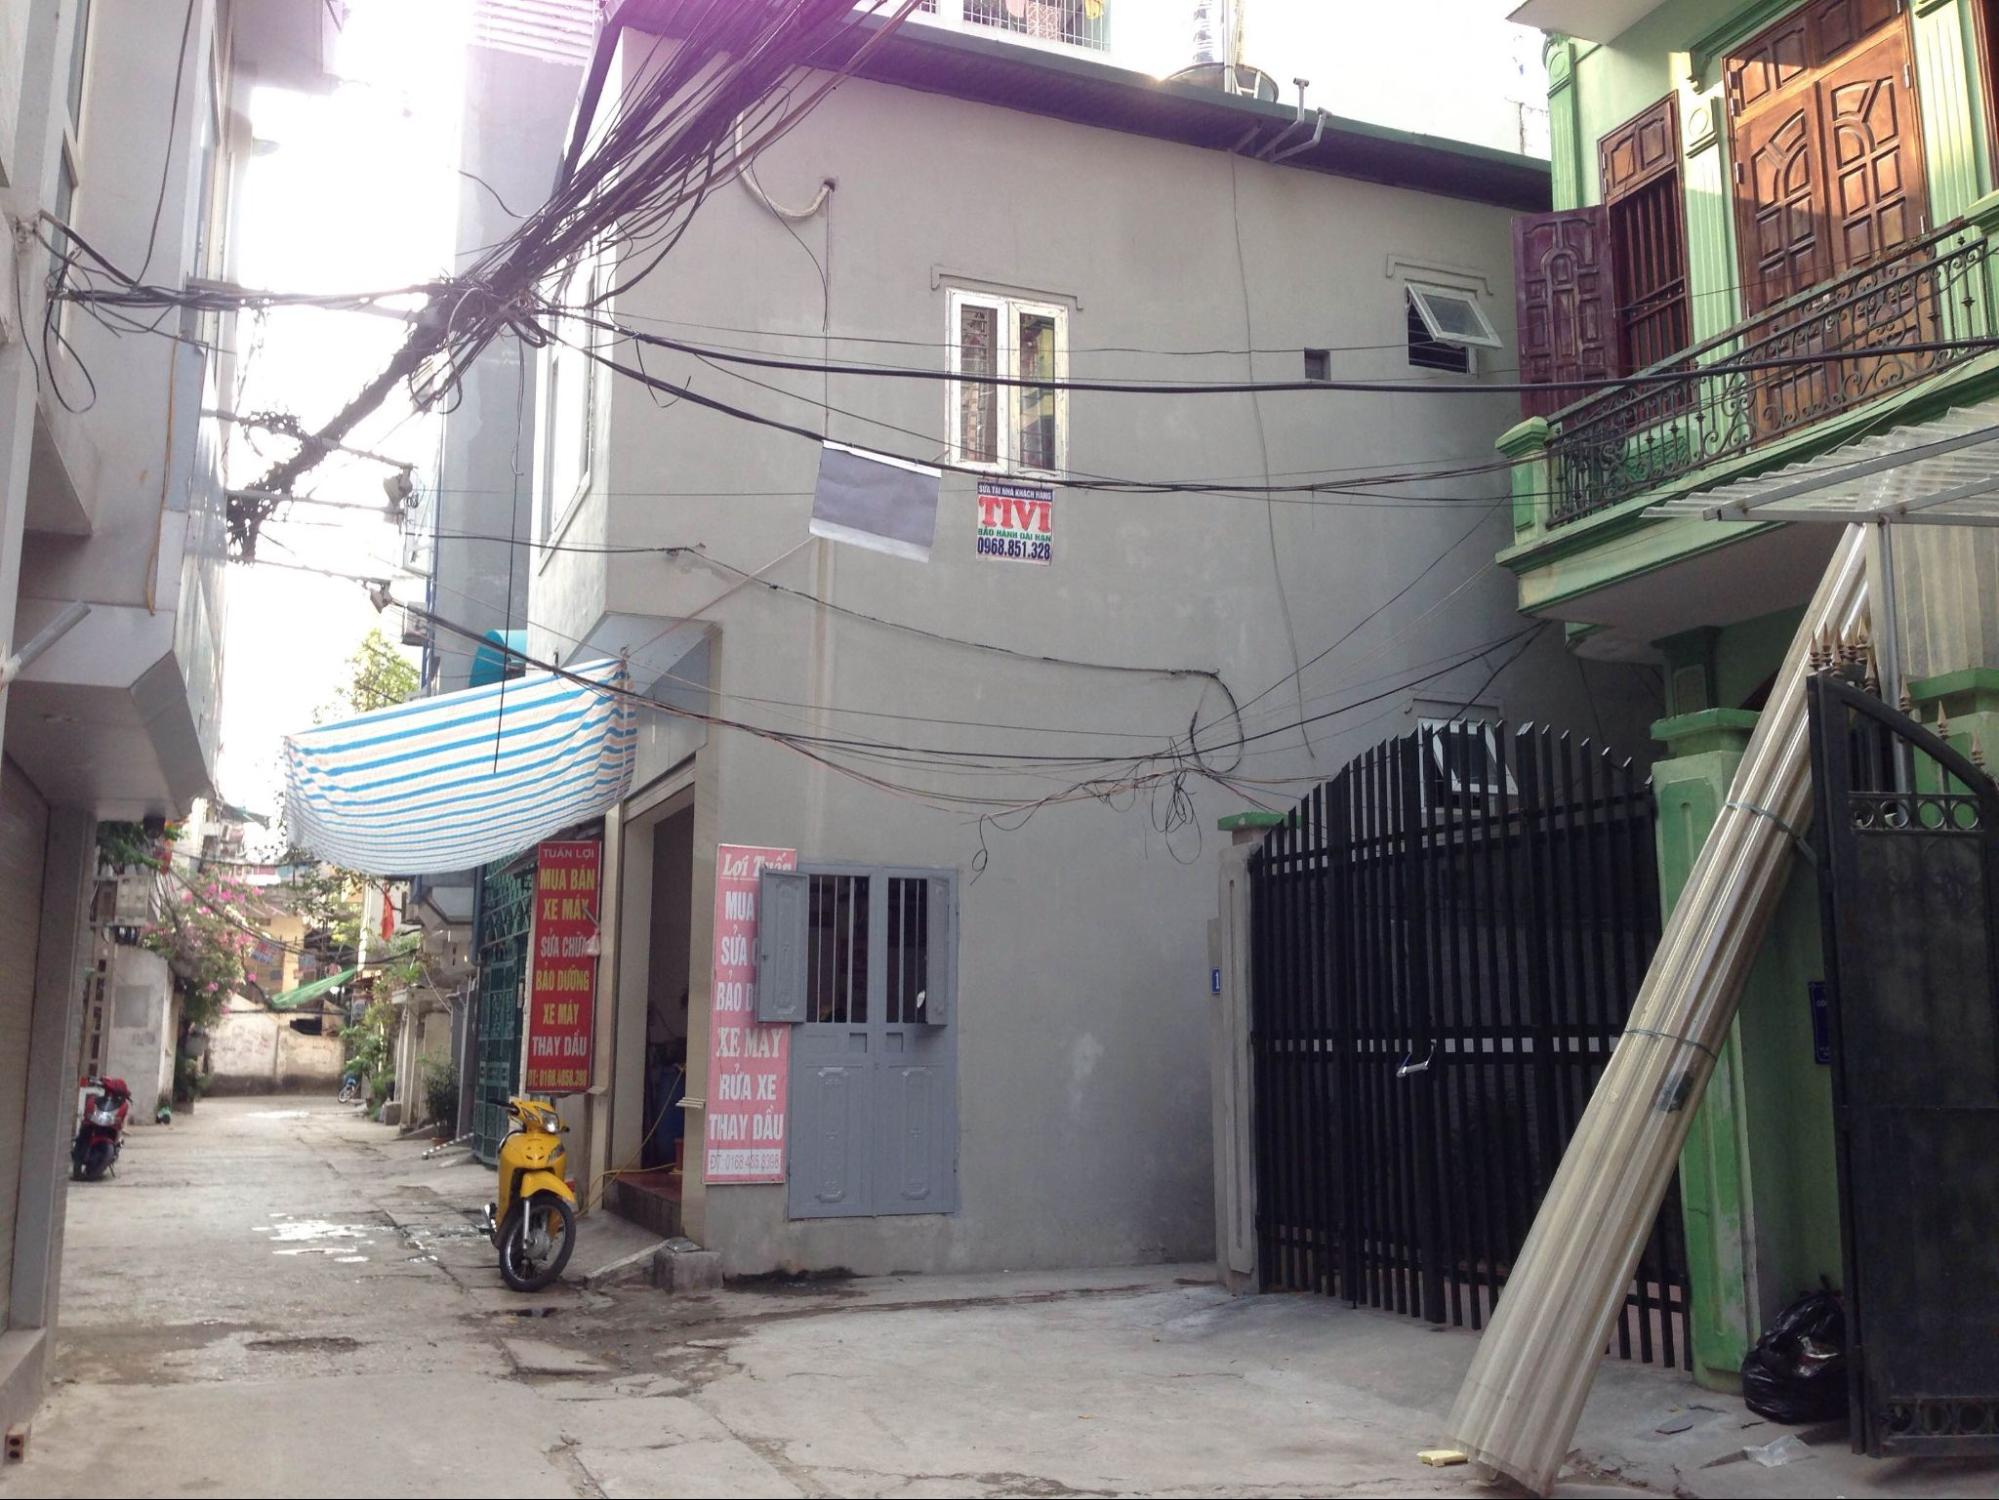 Giá bán nhà riêng 4PN tại phường Tân Mai, quận Hoàng Mai hiện là bao nhiêu?